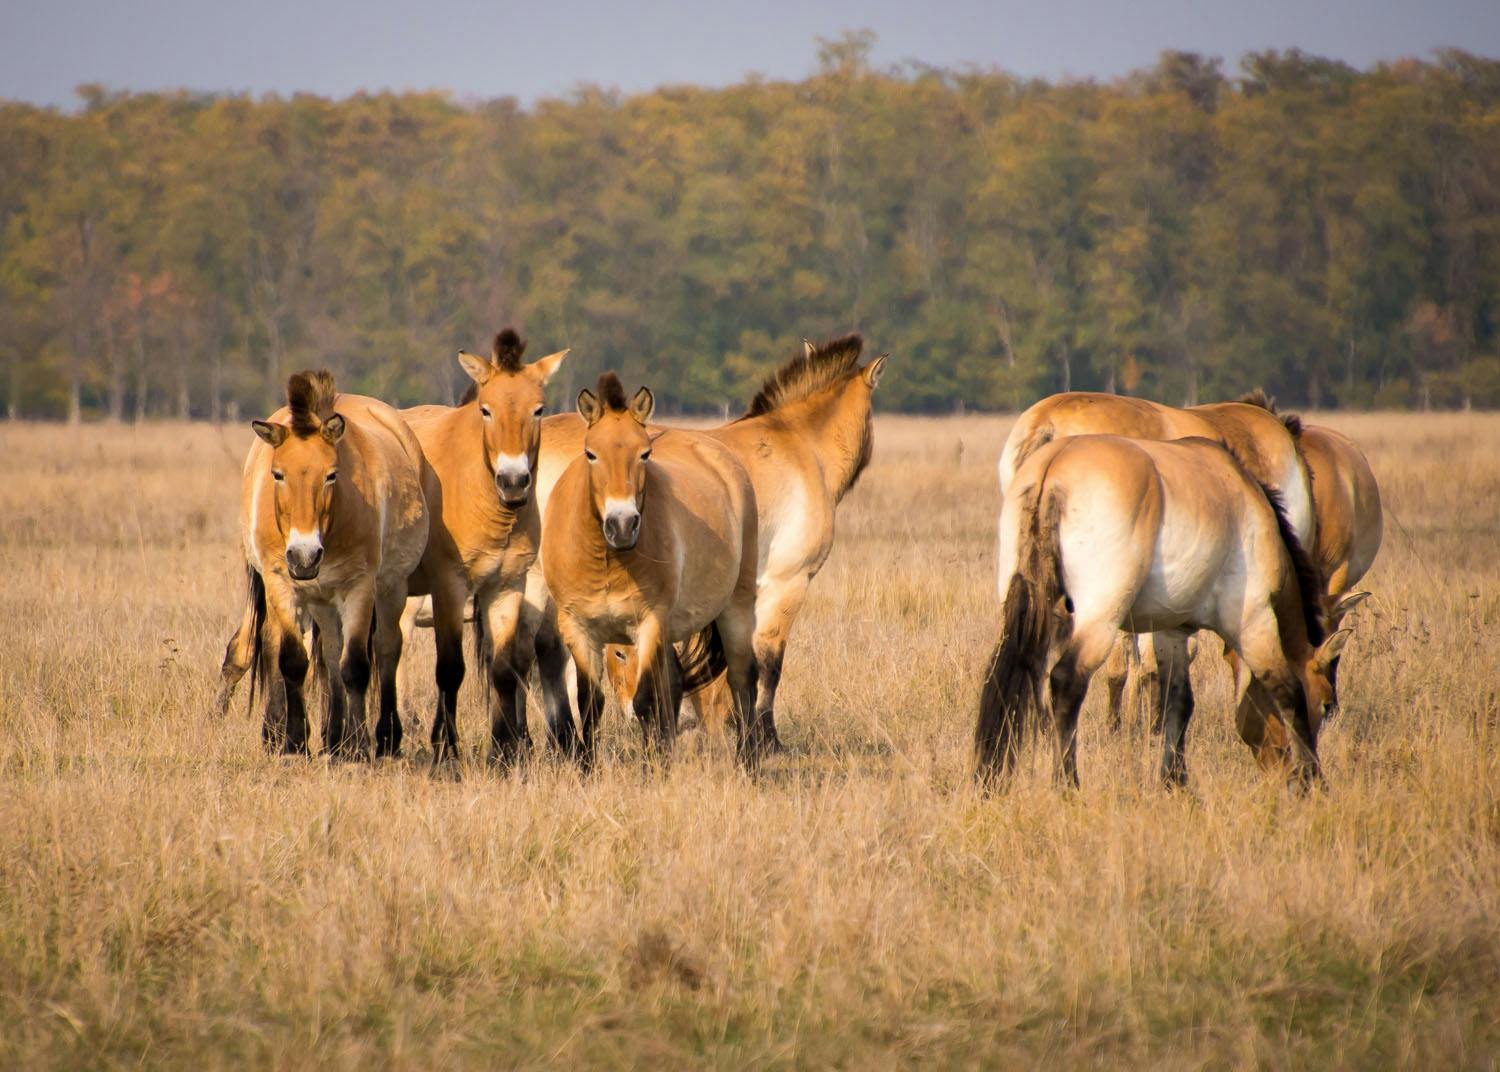 hortobagy national park - wild horses